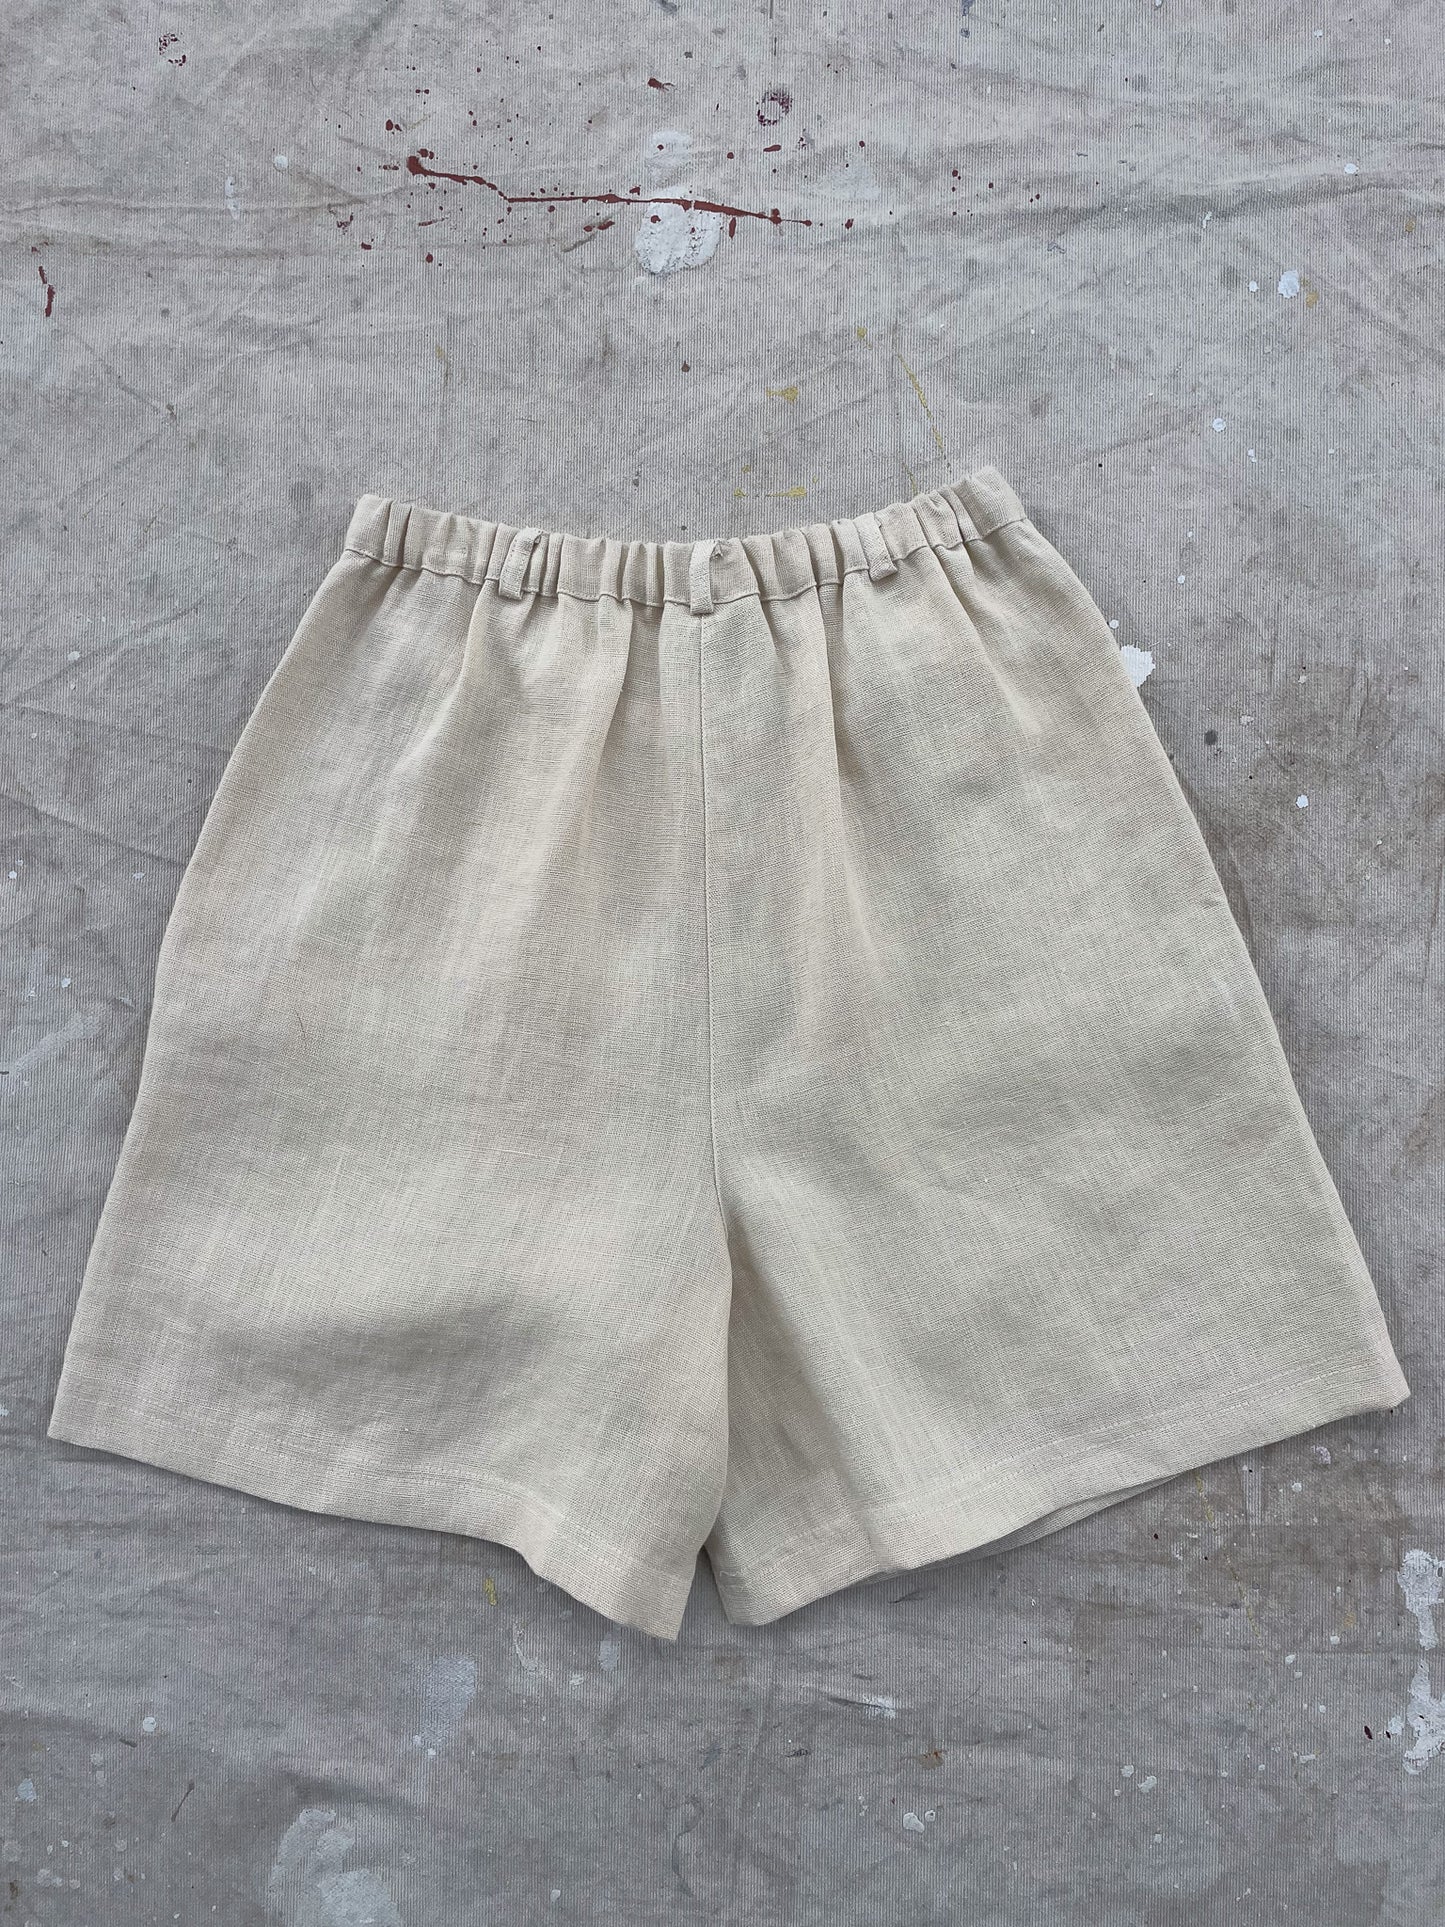 Garnet Hill Hight Waist Linen Pleated Shorts—[24]